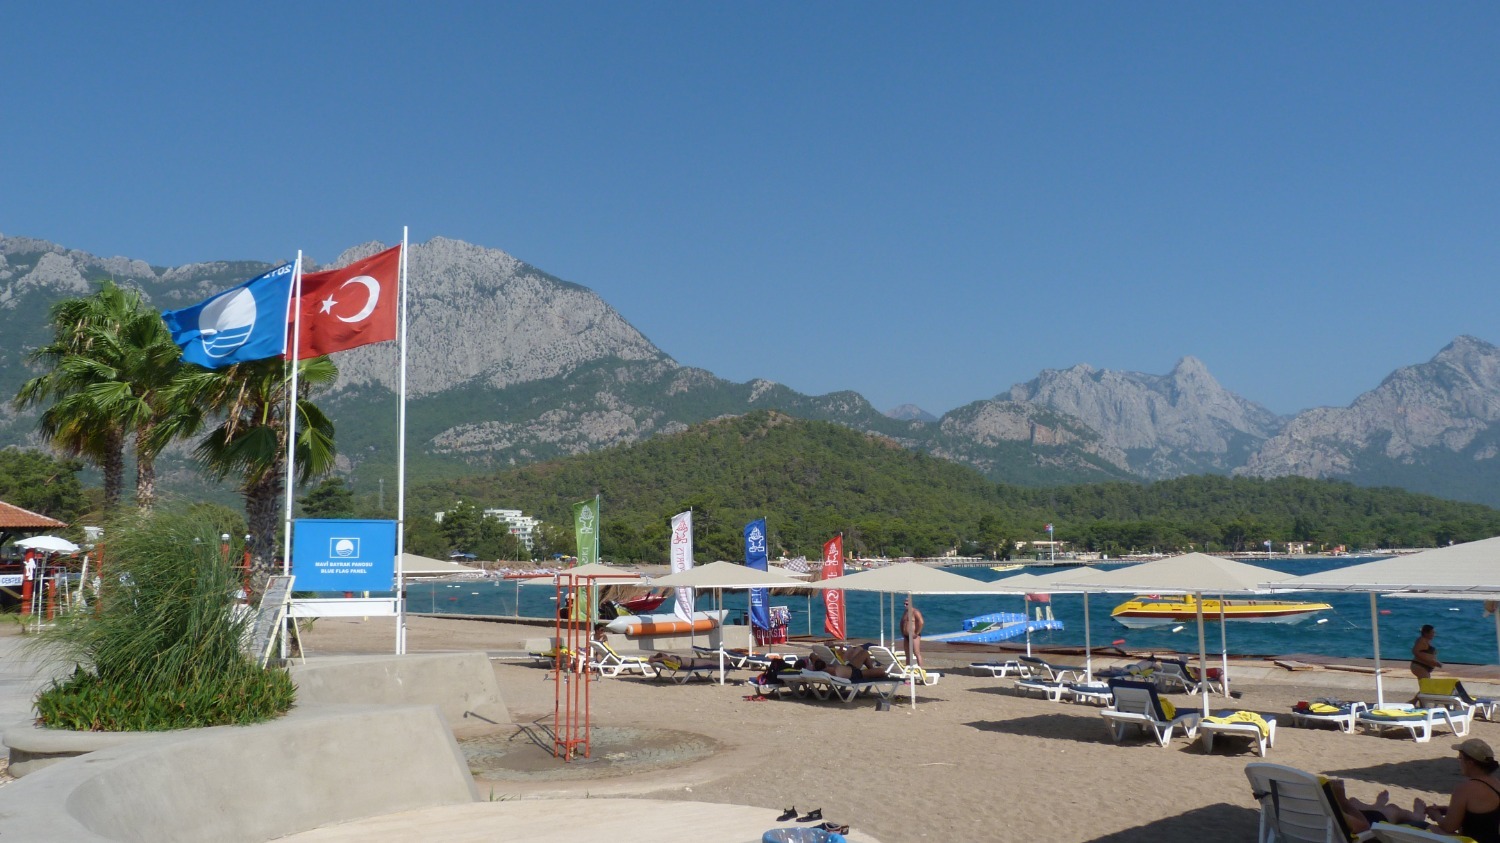 Много пляжей в Турции имеют обозначение - голубой флаг